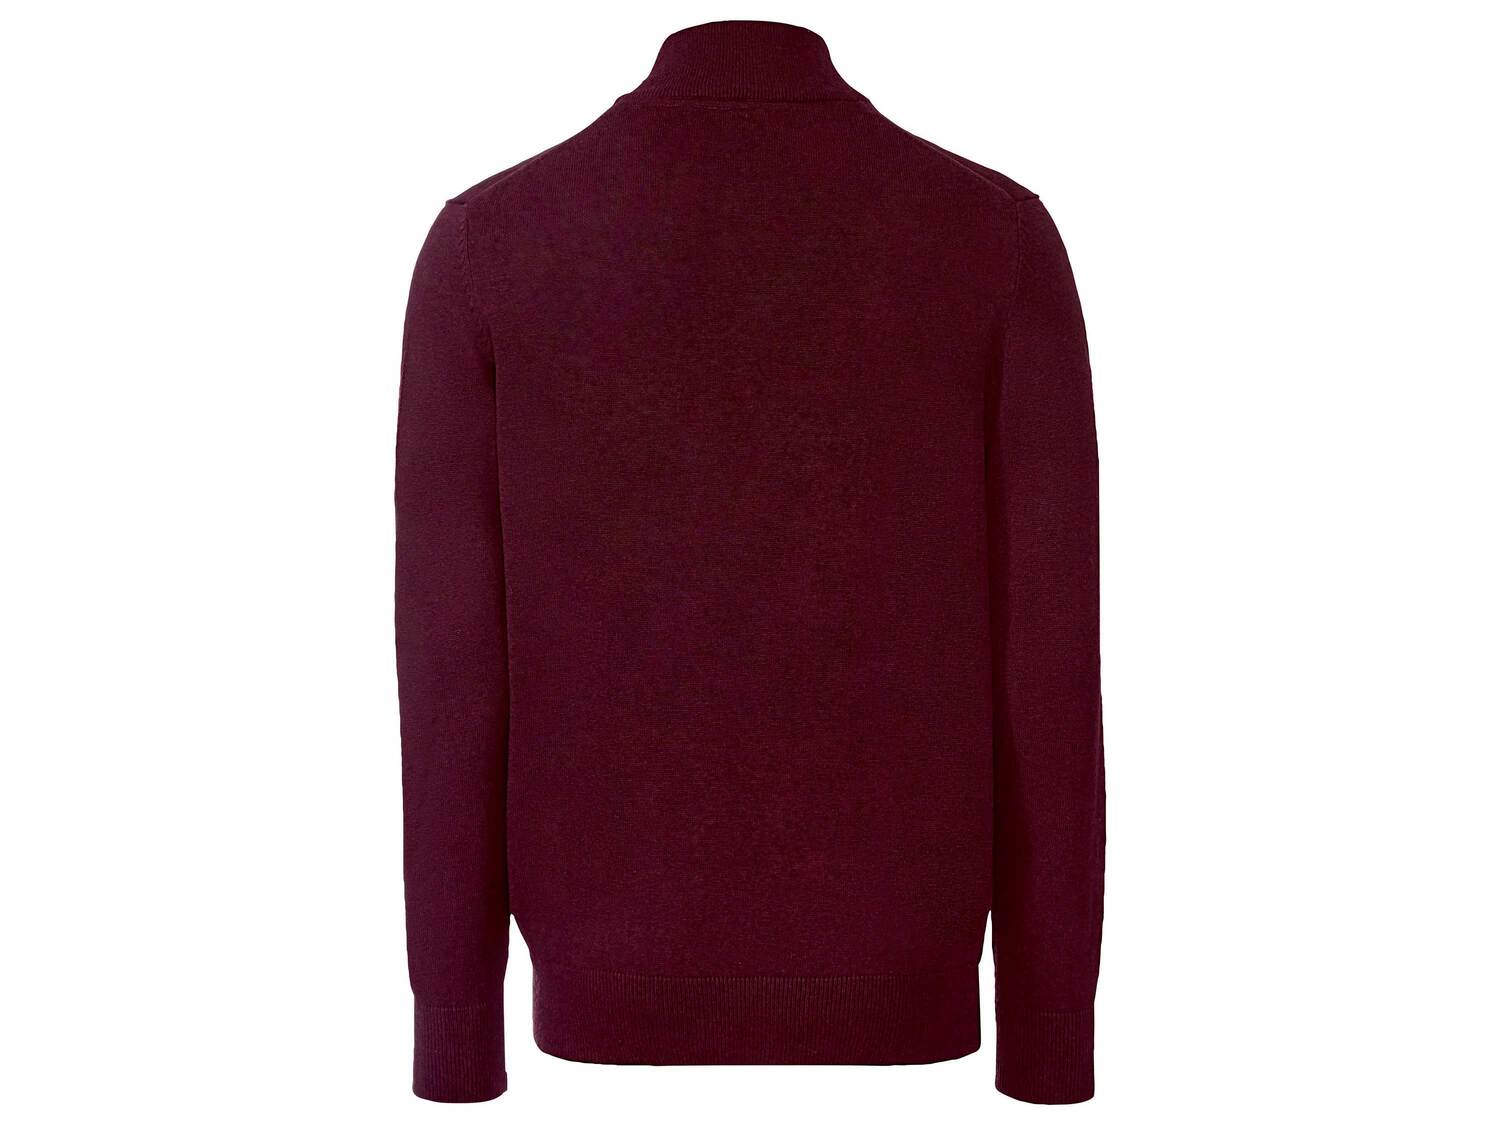 Sweter męski Livergy, cena 39,99 PLN 
- 100% bawełny
- rozmiary: M-XL
Dostępne ...